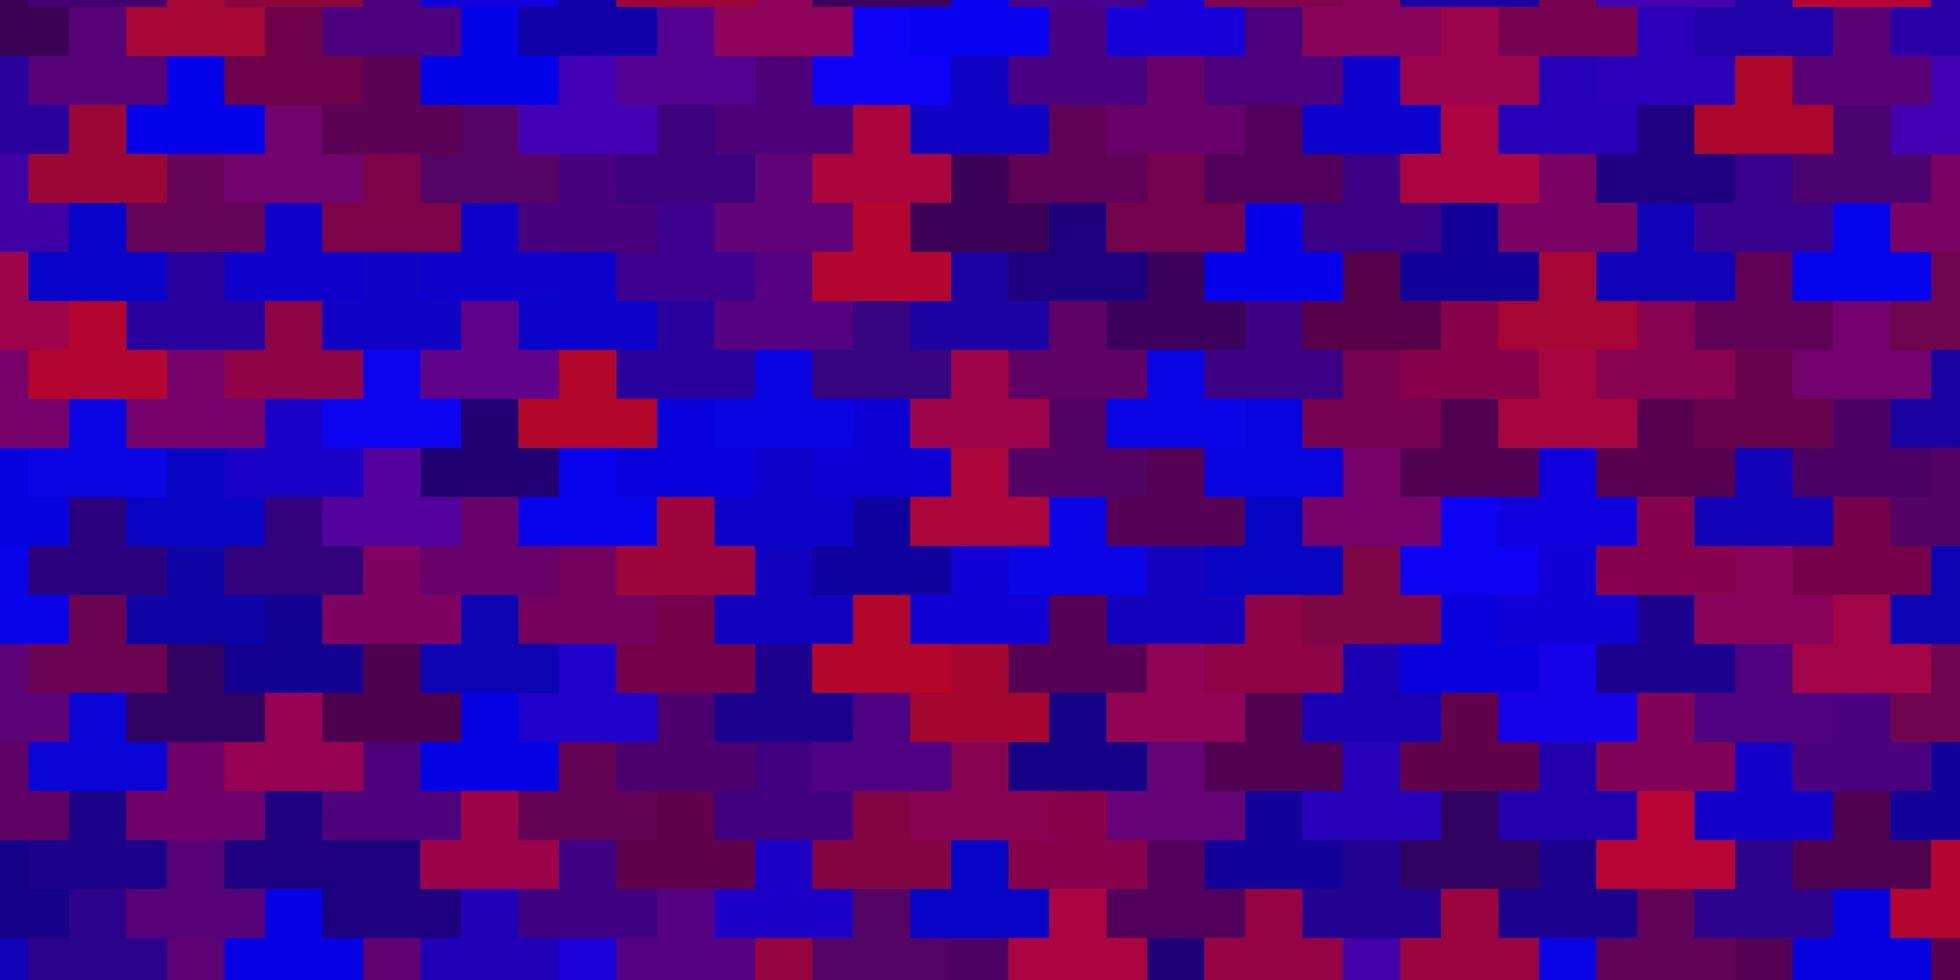 trama vettoriale blu scuro, rosso in stile rettangolare.